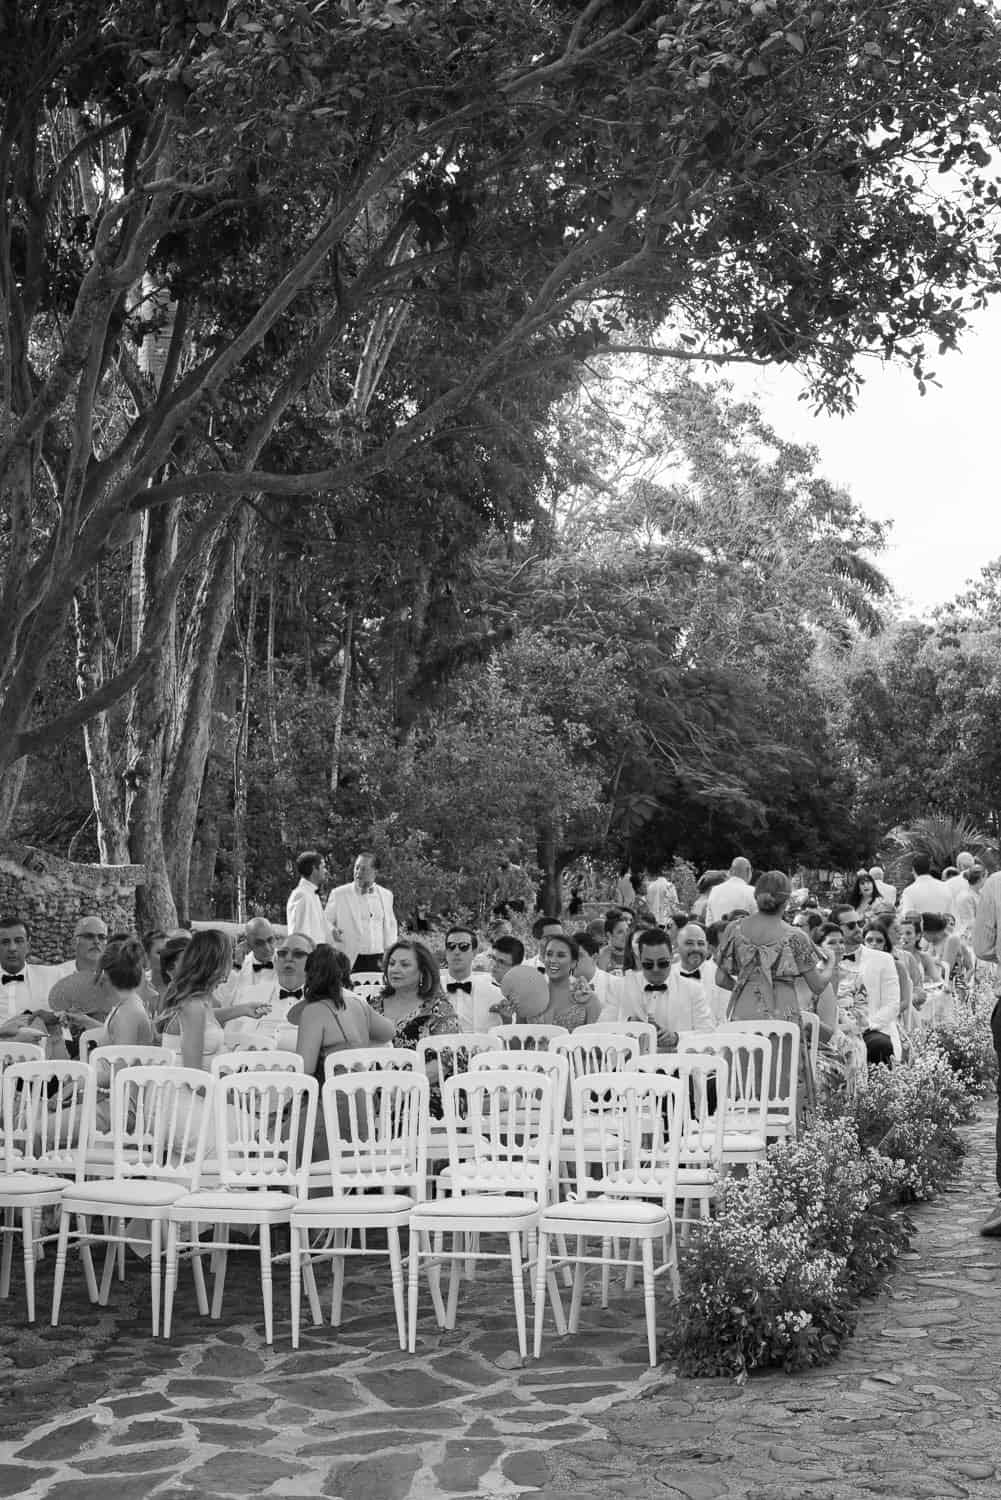 Casa de Campo Wedding Venue, Dominican Republic Wedding, Dominican Republic Wedding Photographer, Theresa Kelly